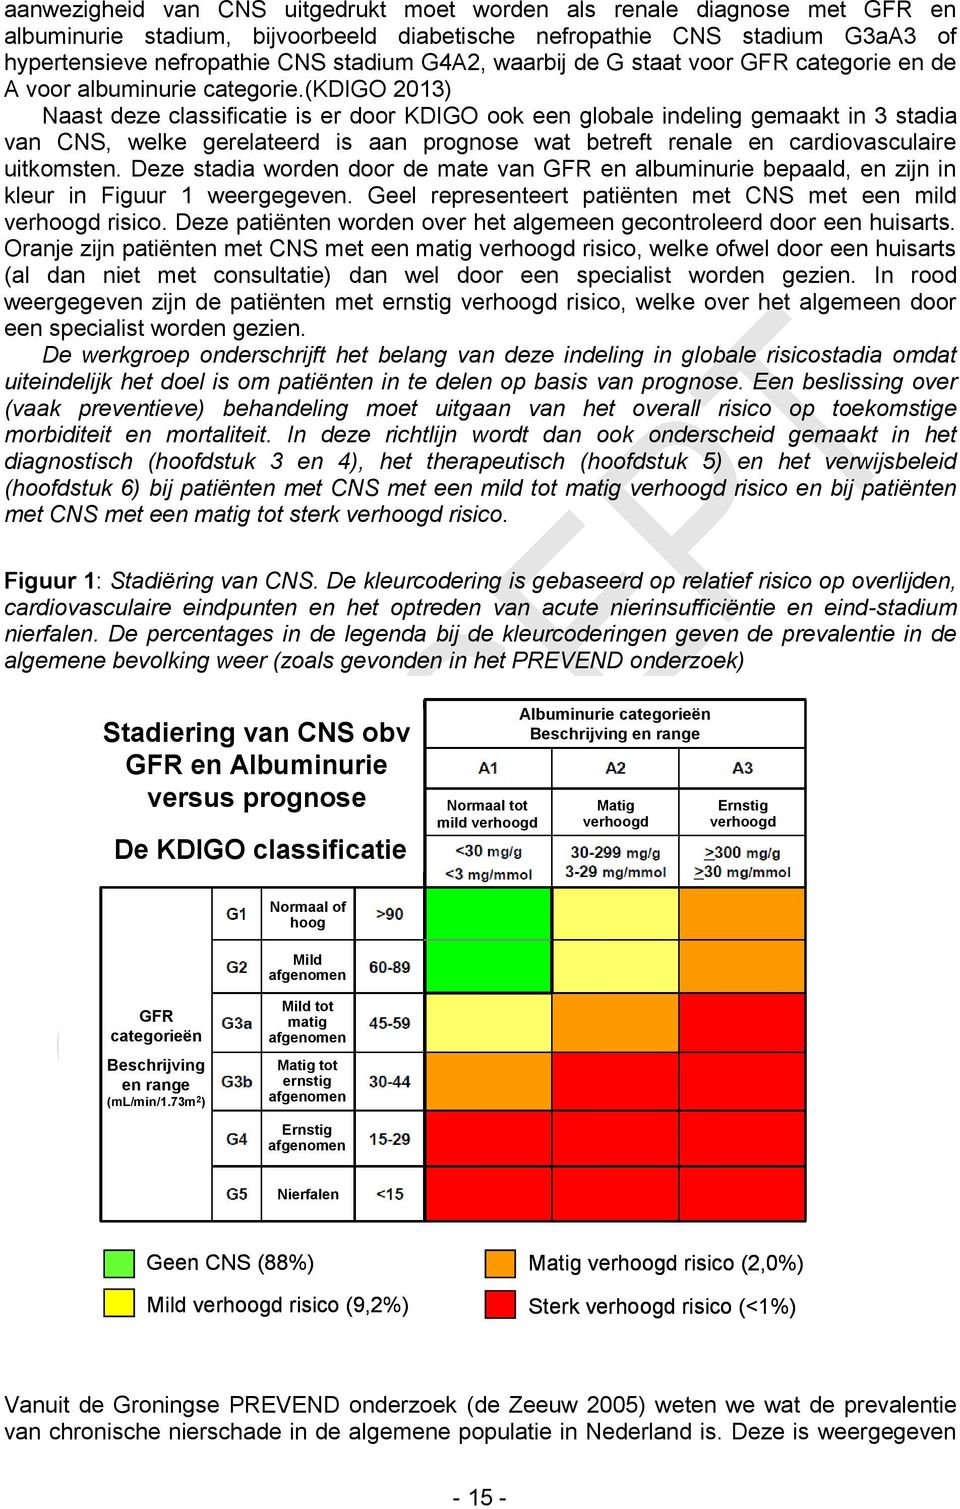 (kdigo 2013) Naast deze classificatie is er door KDIGO ook een globale indeling gemaakt in 3 stadia van CNS, welke gerelateerd is aan prognose wat betreft renale en cardiovasculaire uitkomsten.